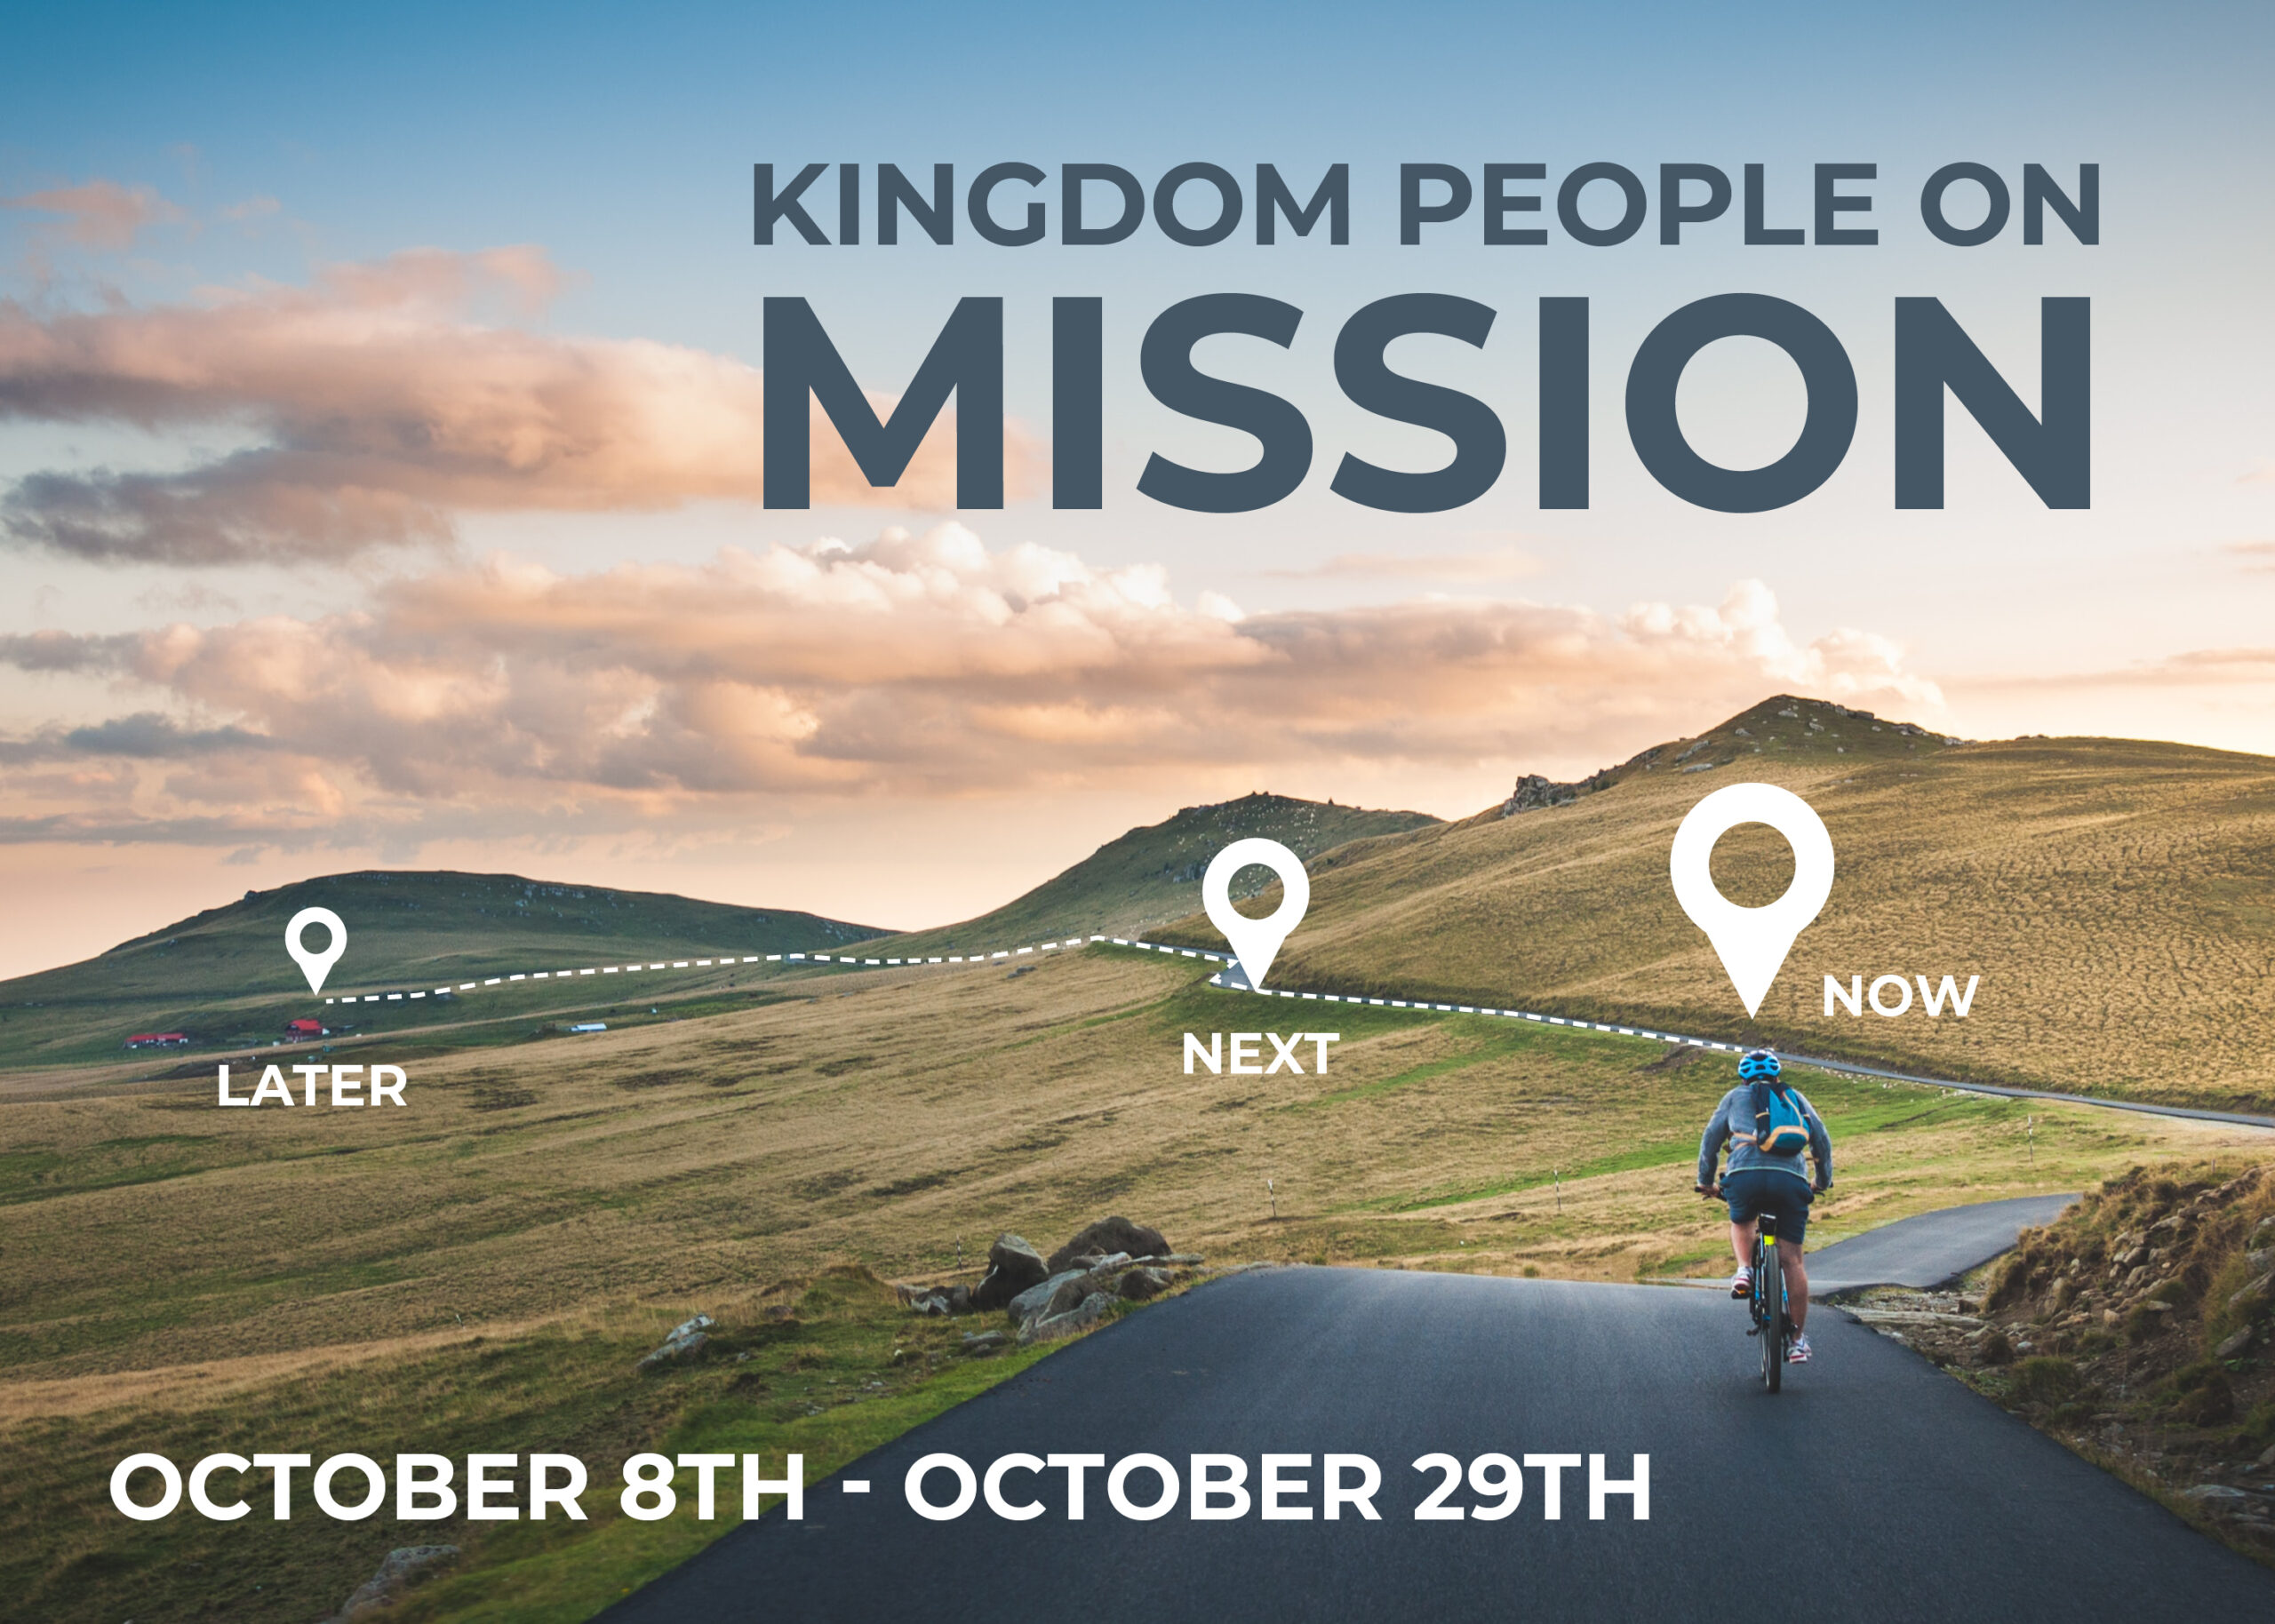 Kindgom People on Mission_events3